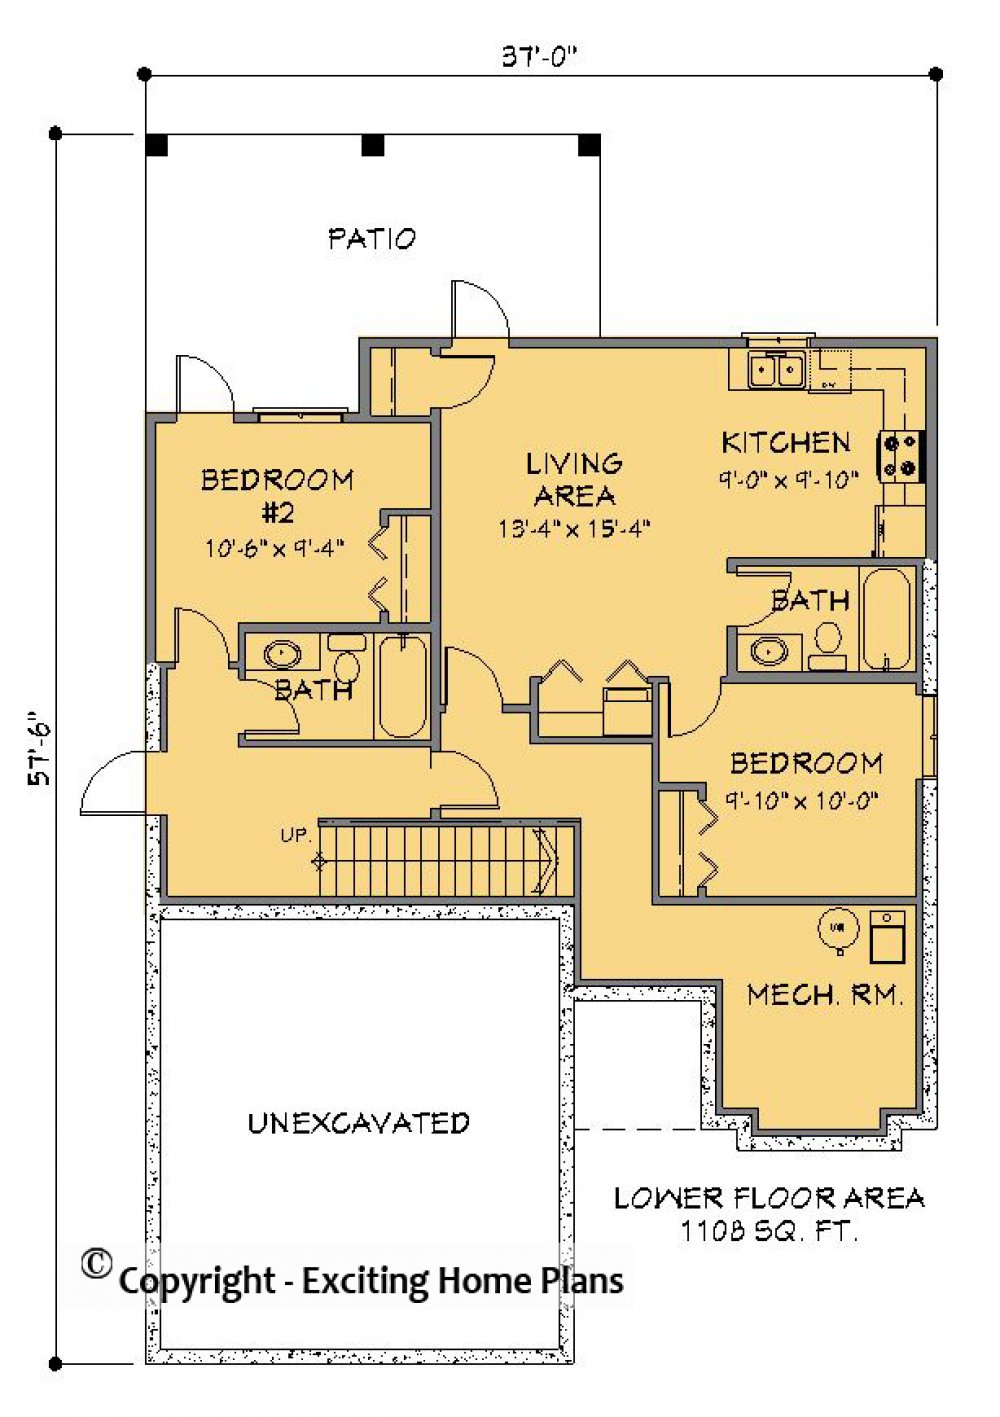 House Plan E1215-10 Lower Floor Plan